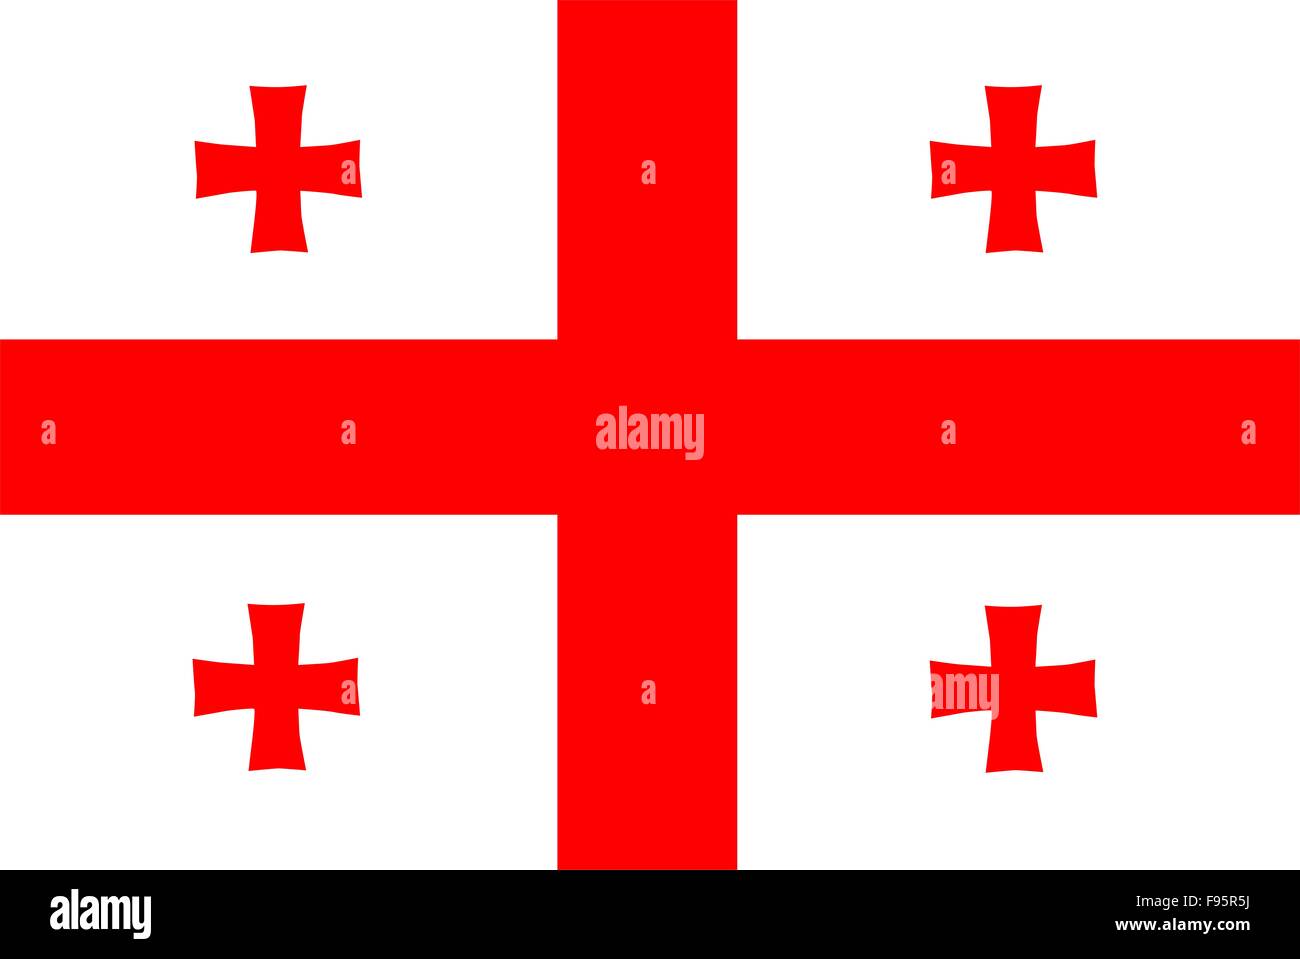 Bandiera georgia immagini e fotografie stock ad alta risoluzione - Alamy